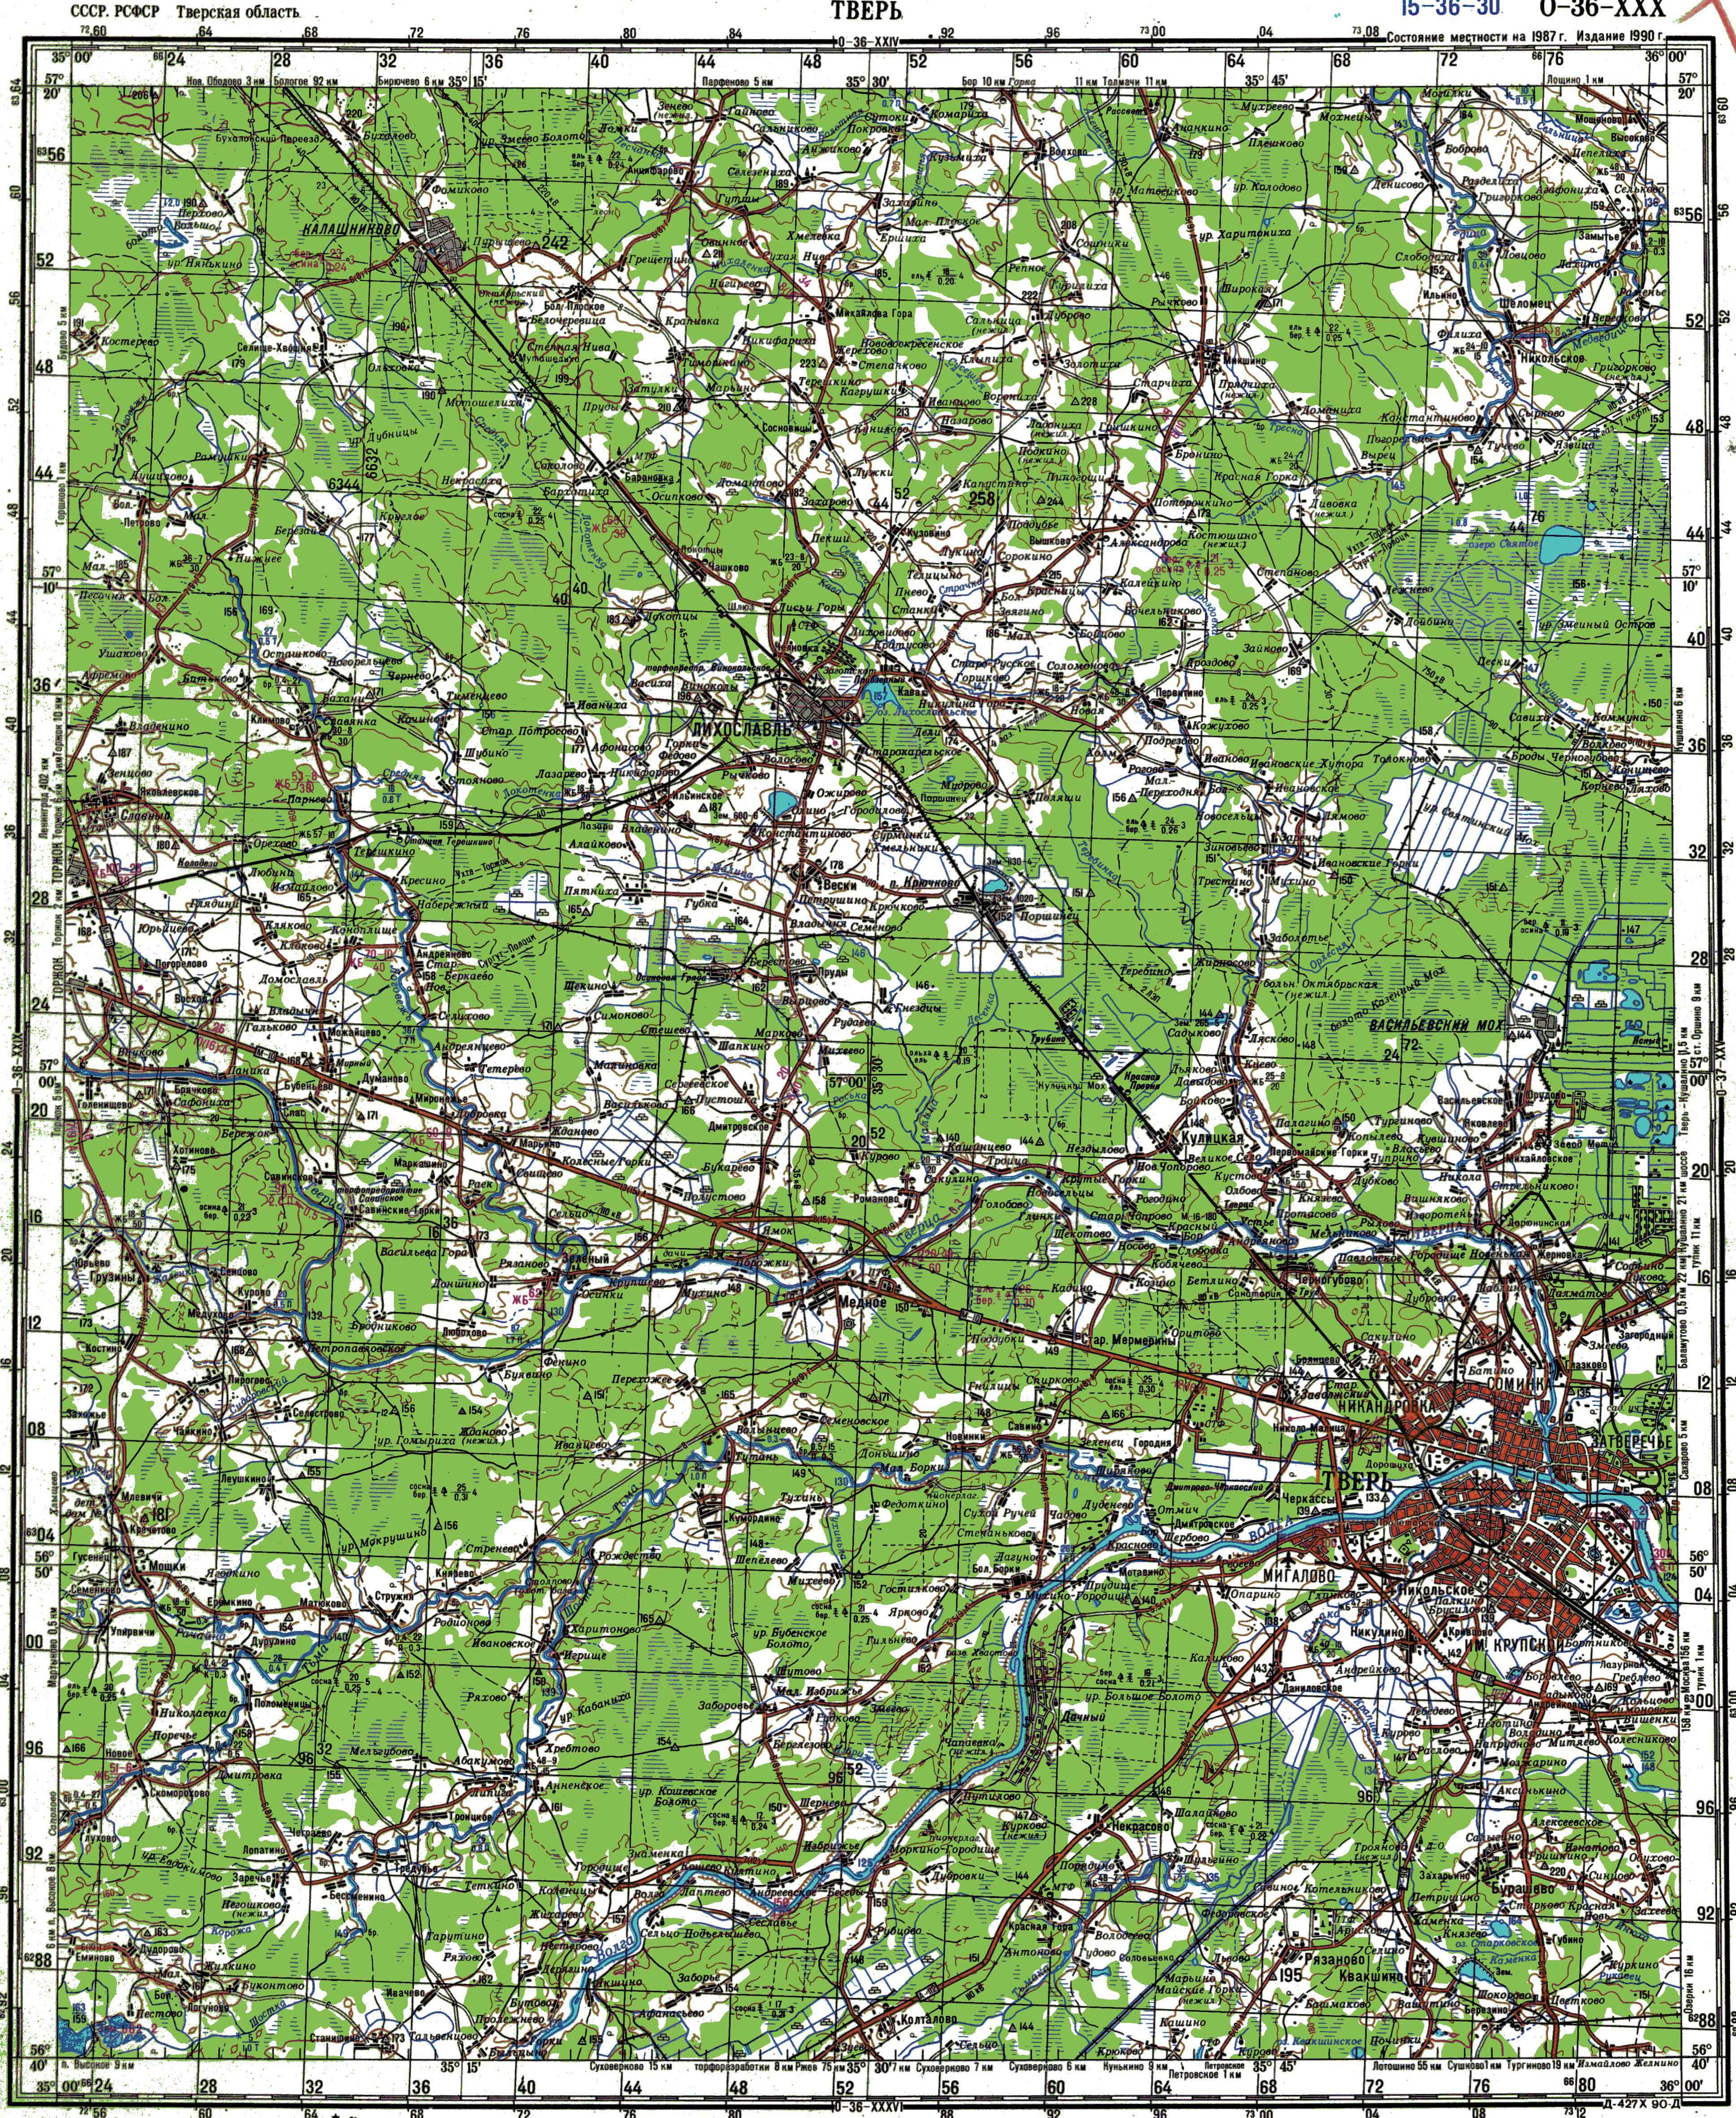 Топографические карты Генштаба / Карты листа O-36 (Санкт-Петербург) / Карты масштаба 1:200000 (двухкилометровки) / Лист O-36-XXX, Тверь